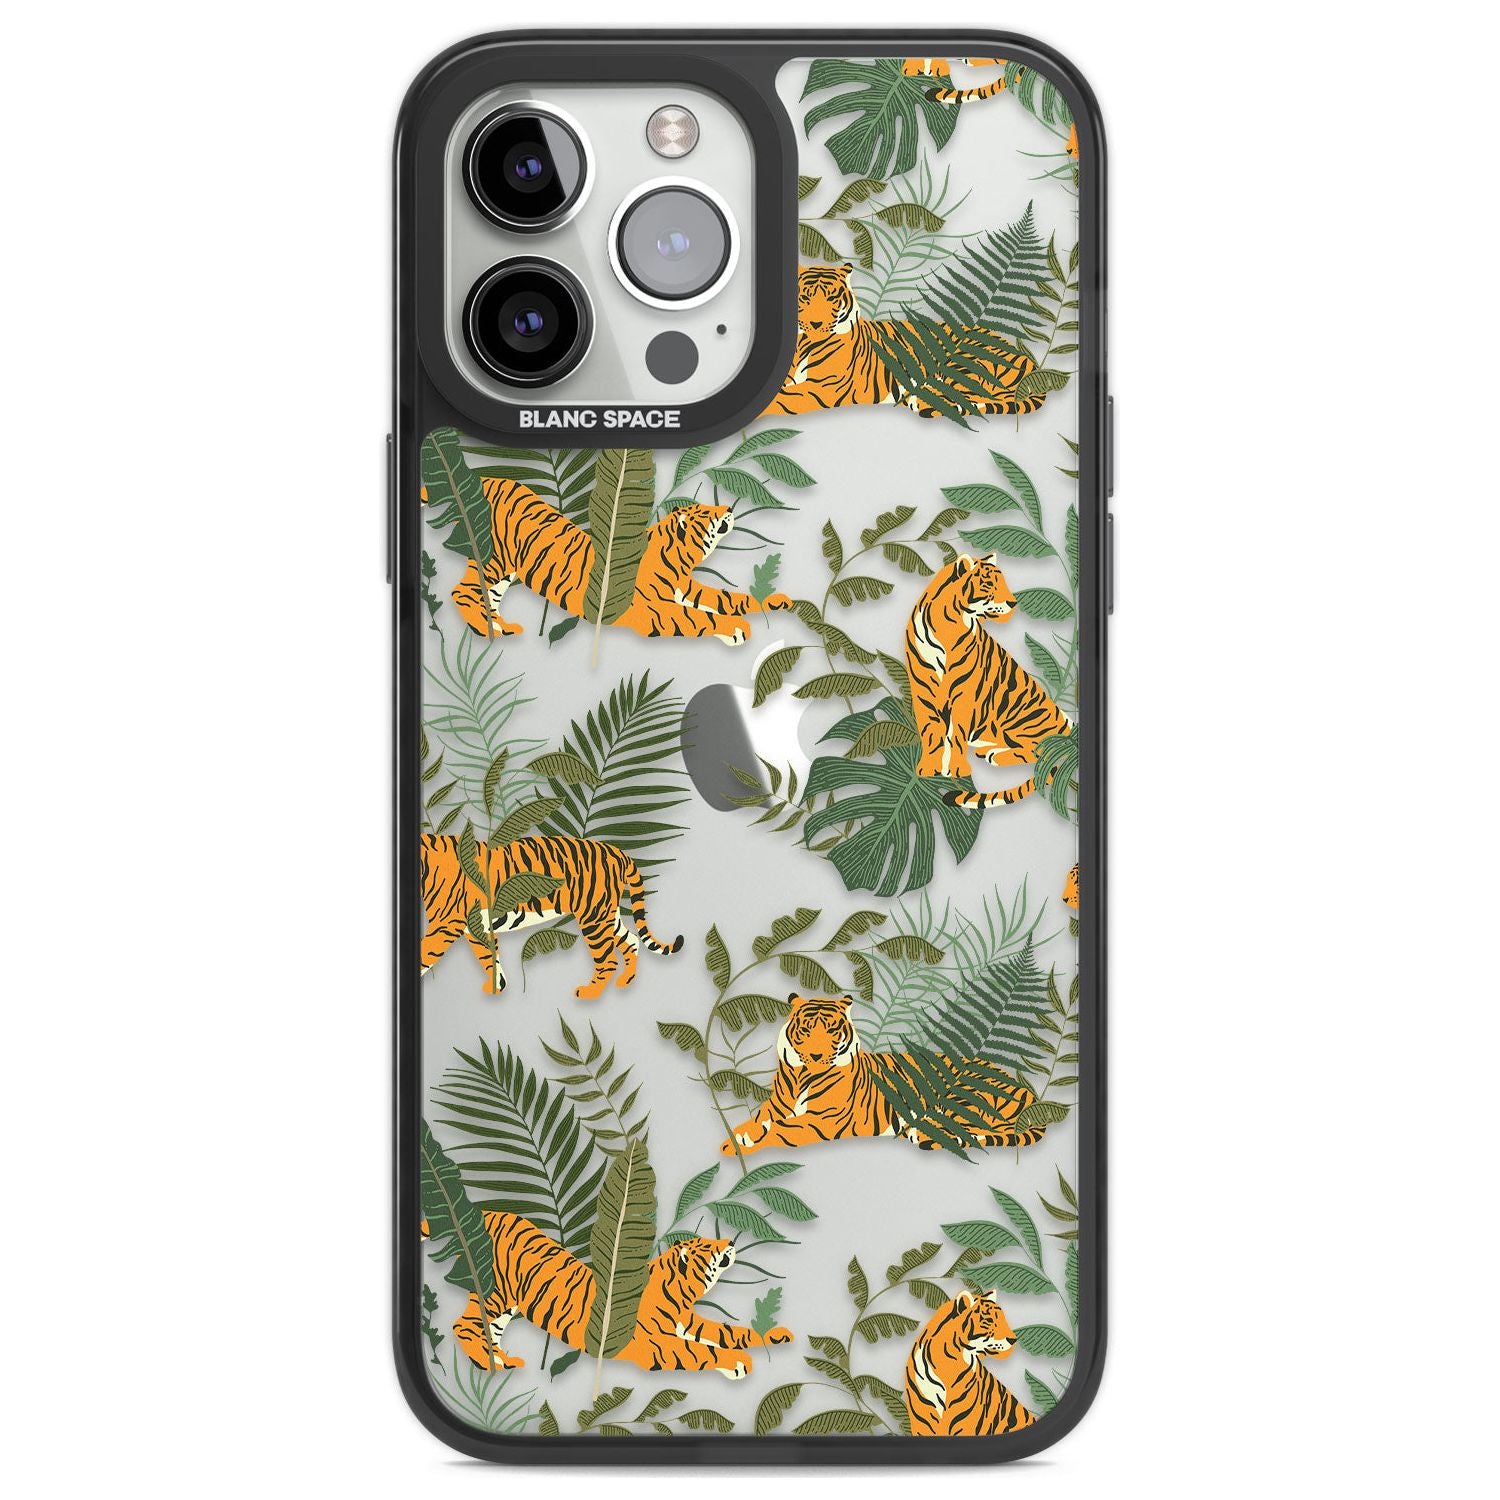 ClearTiger & Fern Jungle Cat Pattern Phone Case iPhone 13 Pro Max / Black Impact Case,iPhone 14 Pro Max / Black Impact Case Blanc Space